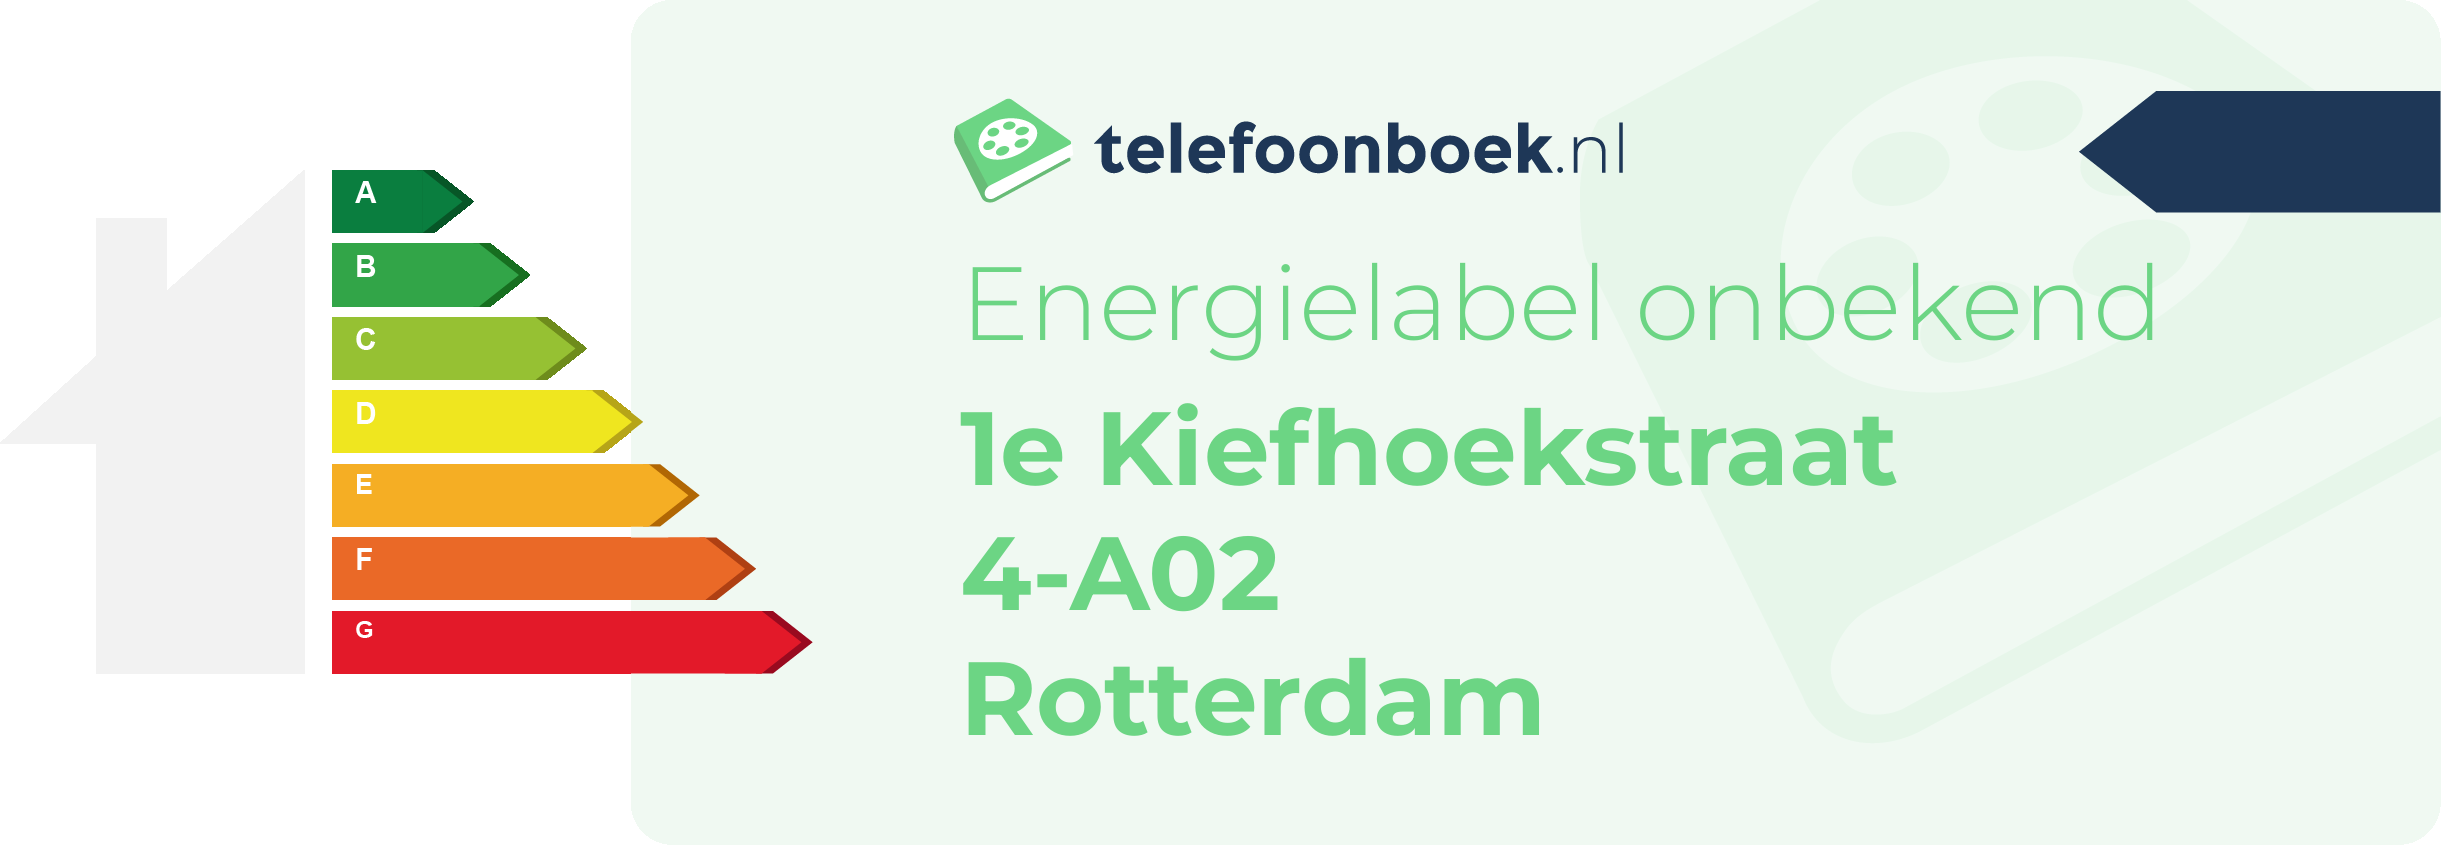 Energielabel 1e Kiefhoekstraat 4-A02 Rotterdam